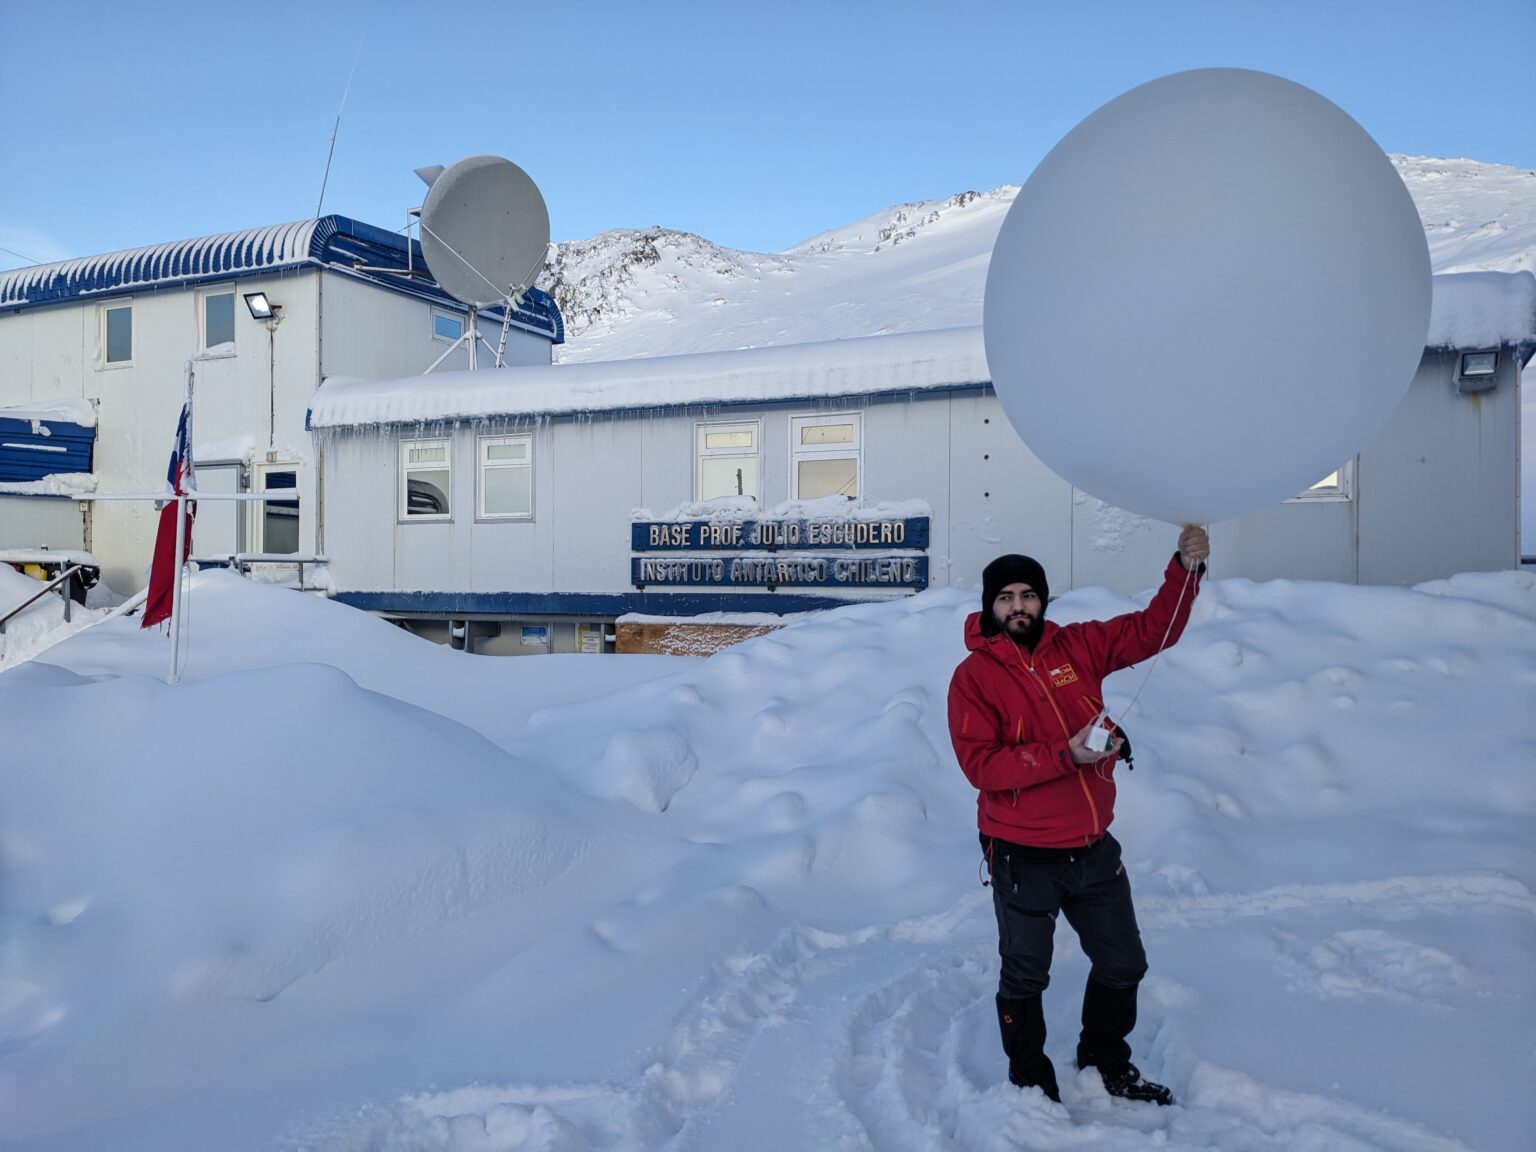 Científicos chilenos lanzaron 37 radiosondas para estudiar eventos atmosféricos en el invierno antártico